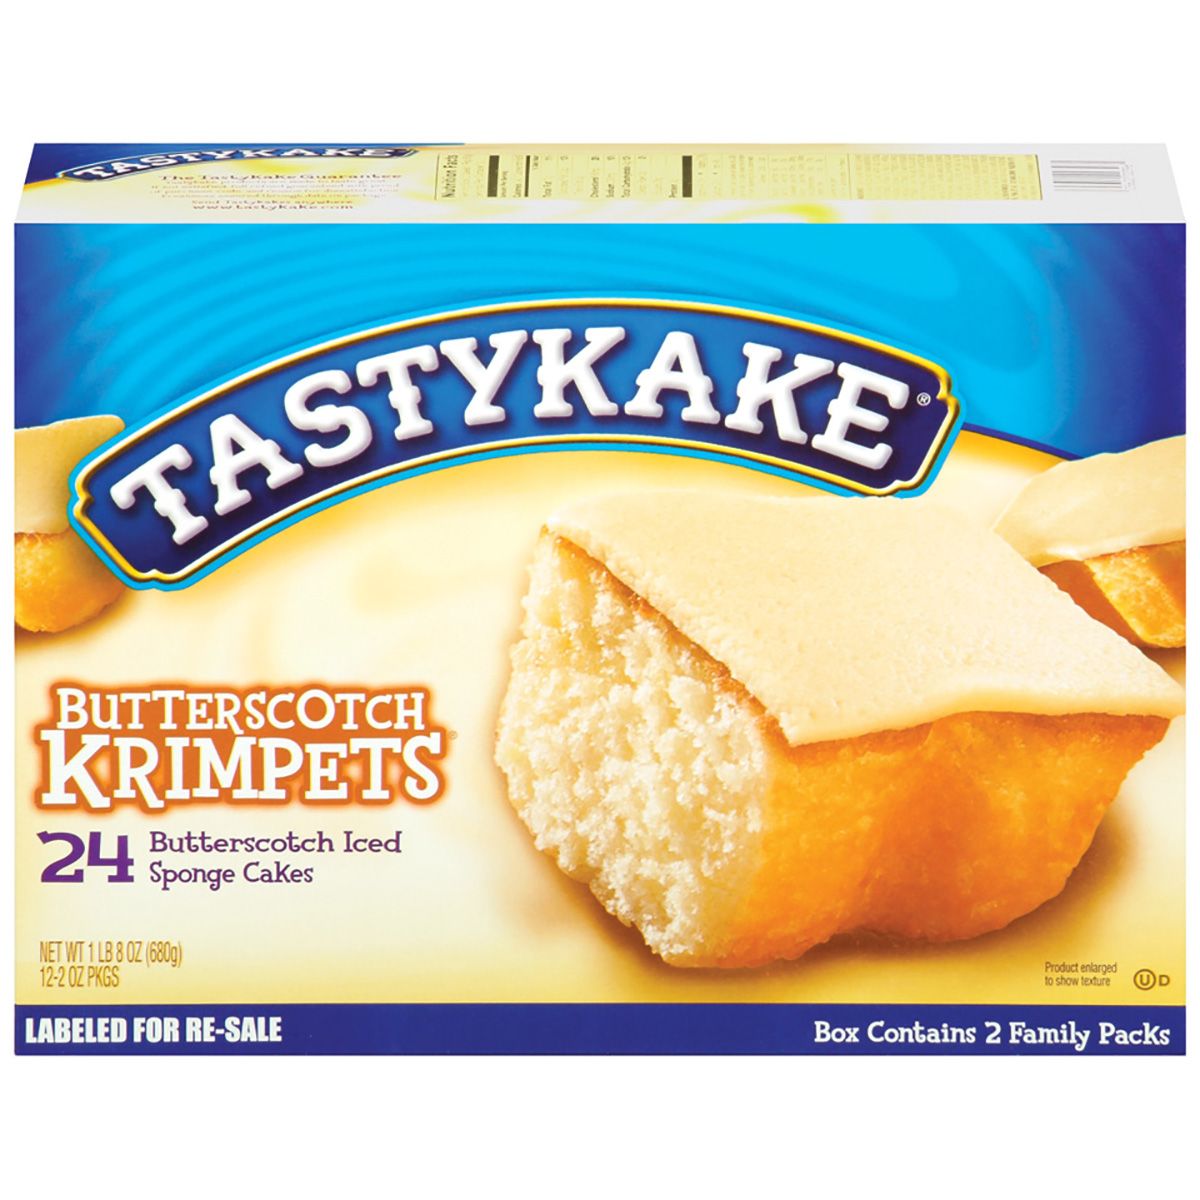 Tastykake Butterscotch Krimpets, 24 ct./1 oz.